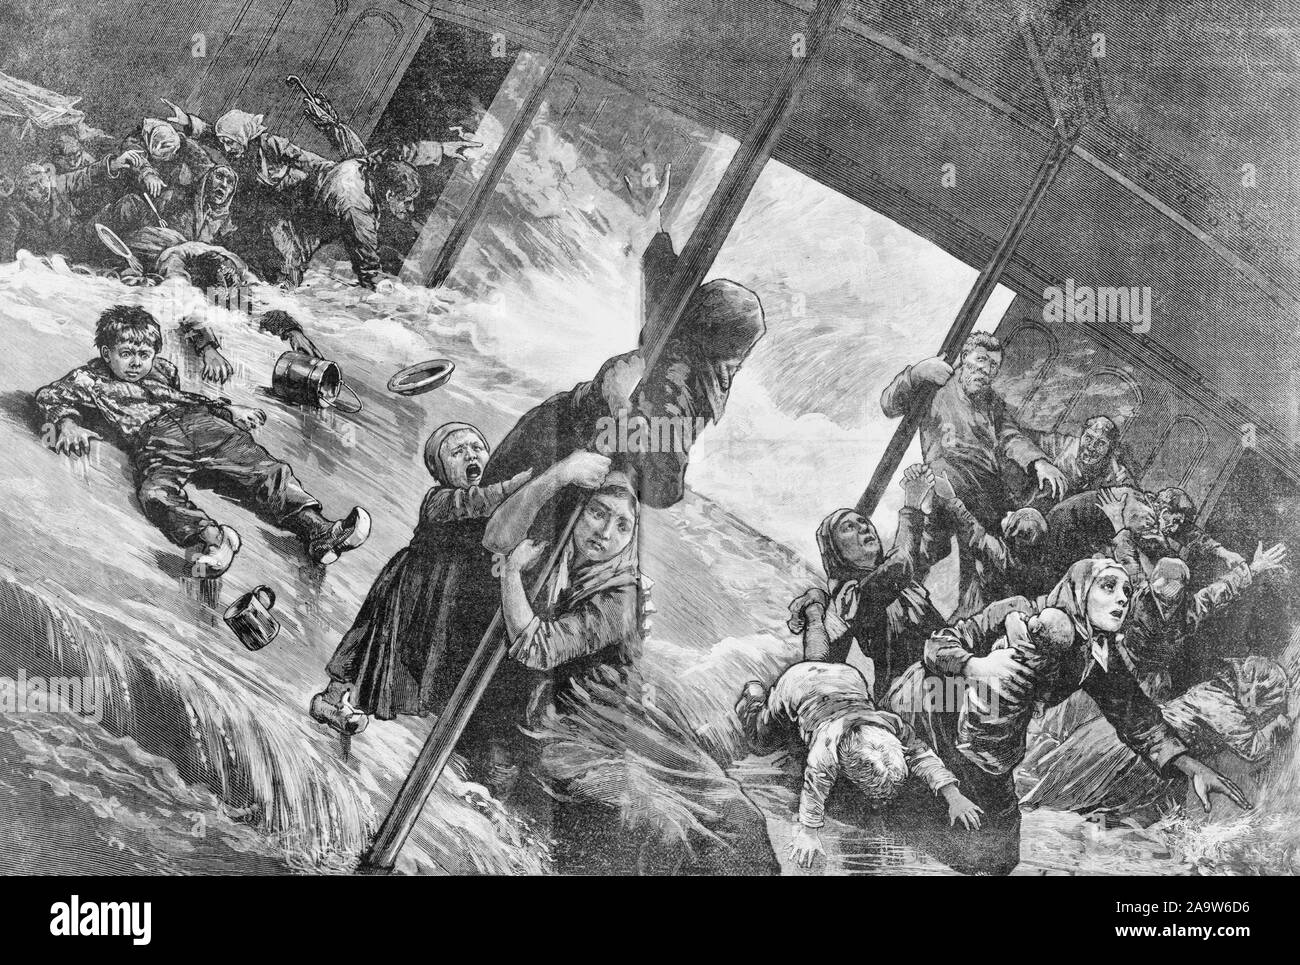 Zwischen Decks eines Ozeandampfer während eines Sturms - Versand eine schwere See - Menschen gleiten auf Kippen Stock eines Ozeandampfer während eines Sturms, ca. 1885 Stockfoto